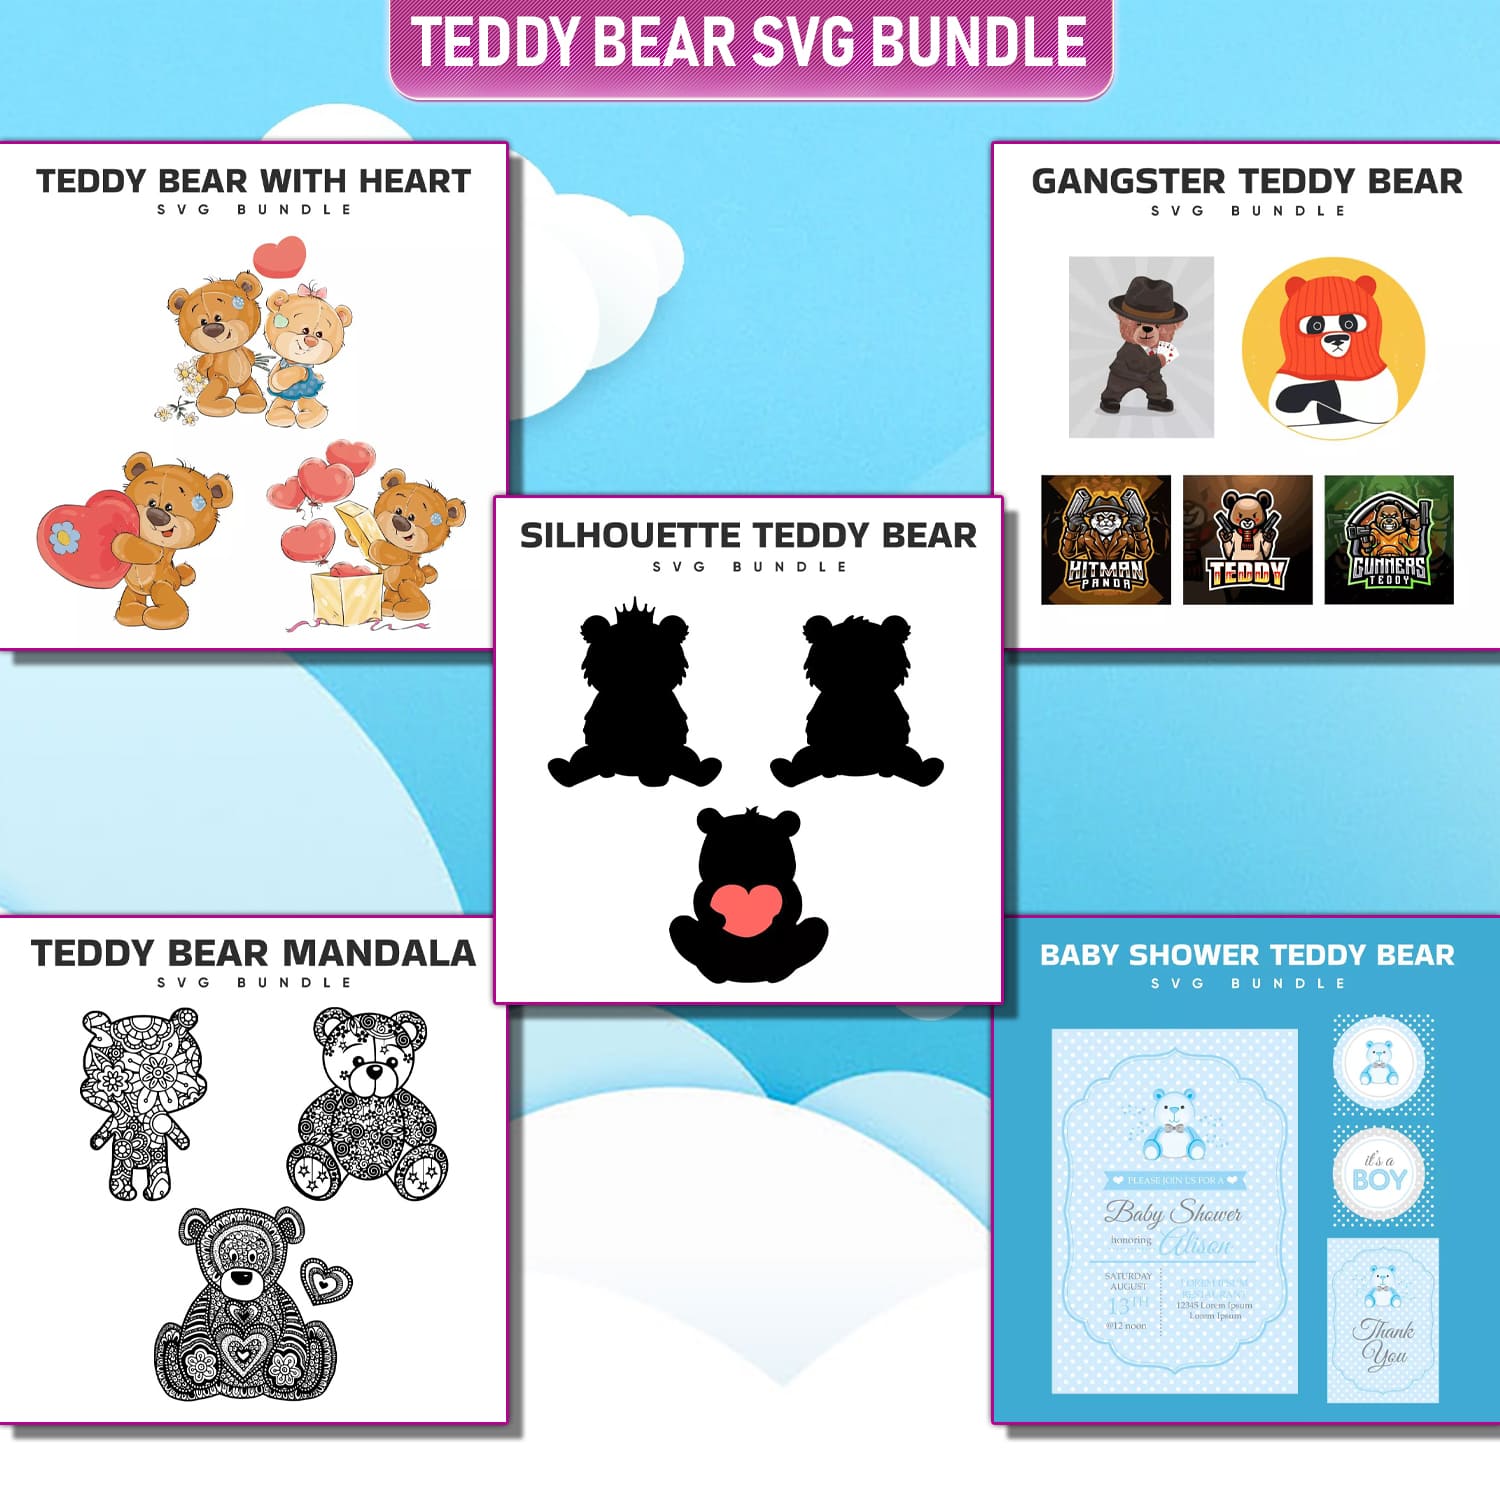 The teddy bear svg bundle includes a teddy bear.